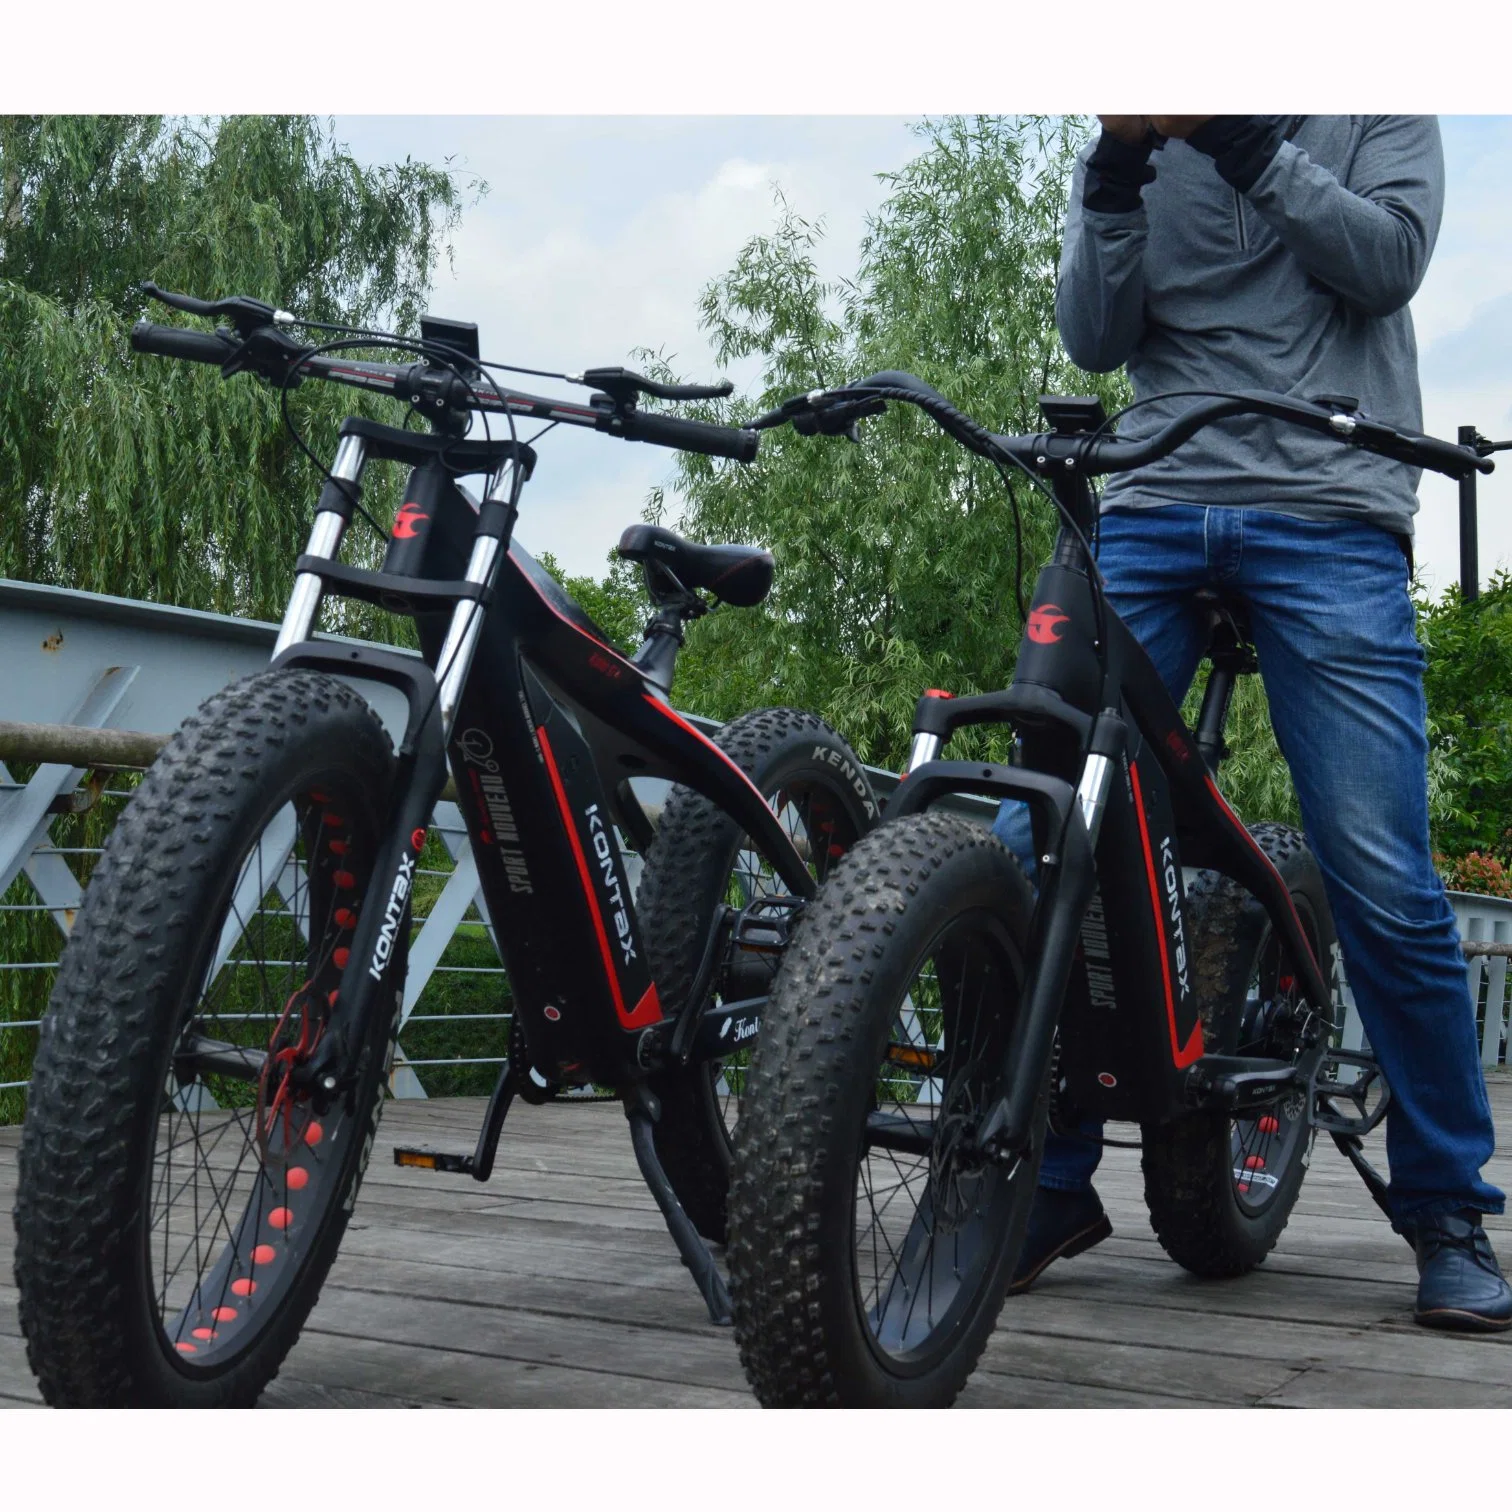 الدرّاجة الدهن الدهن الدهن الدهن الحوينة ألياف الكربون الإطار الدراجة الهوائية 1000 واط شركة كهربائية للدراجات الهوائية تبيع الدرّاجات فات الصبي